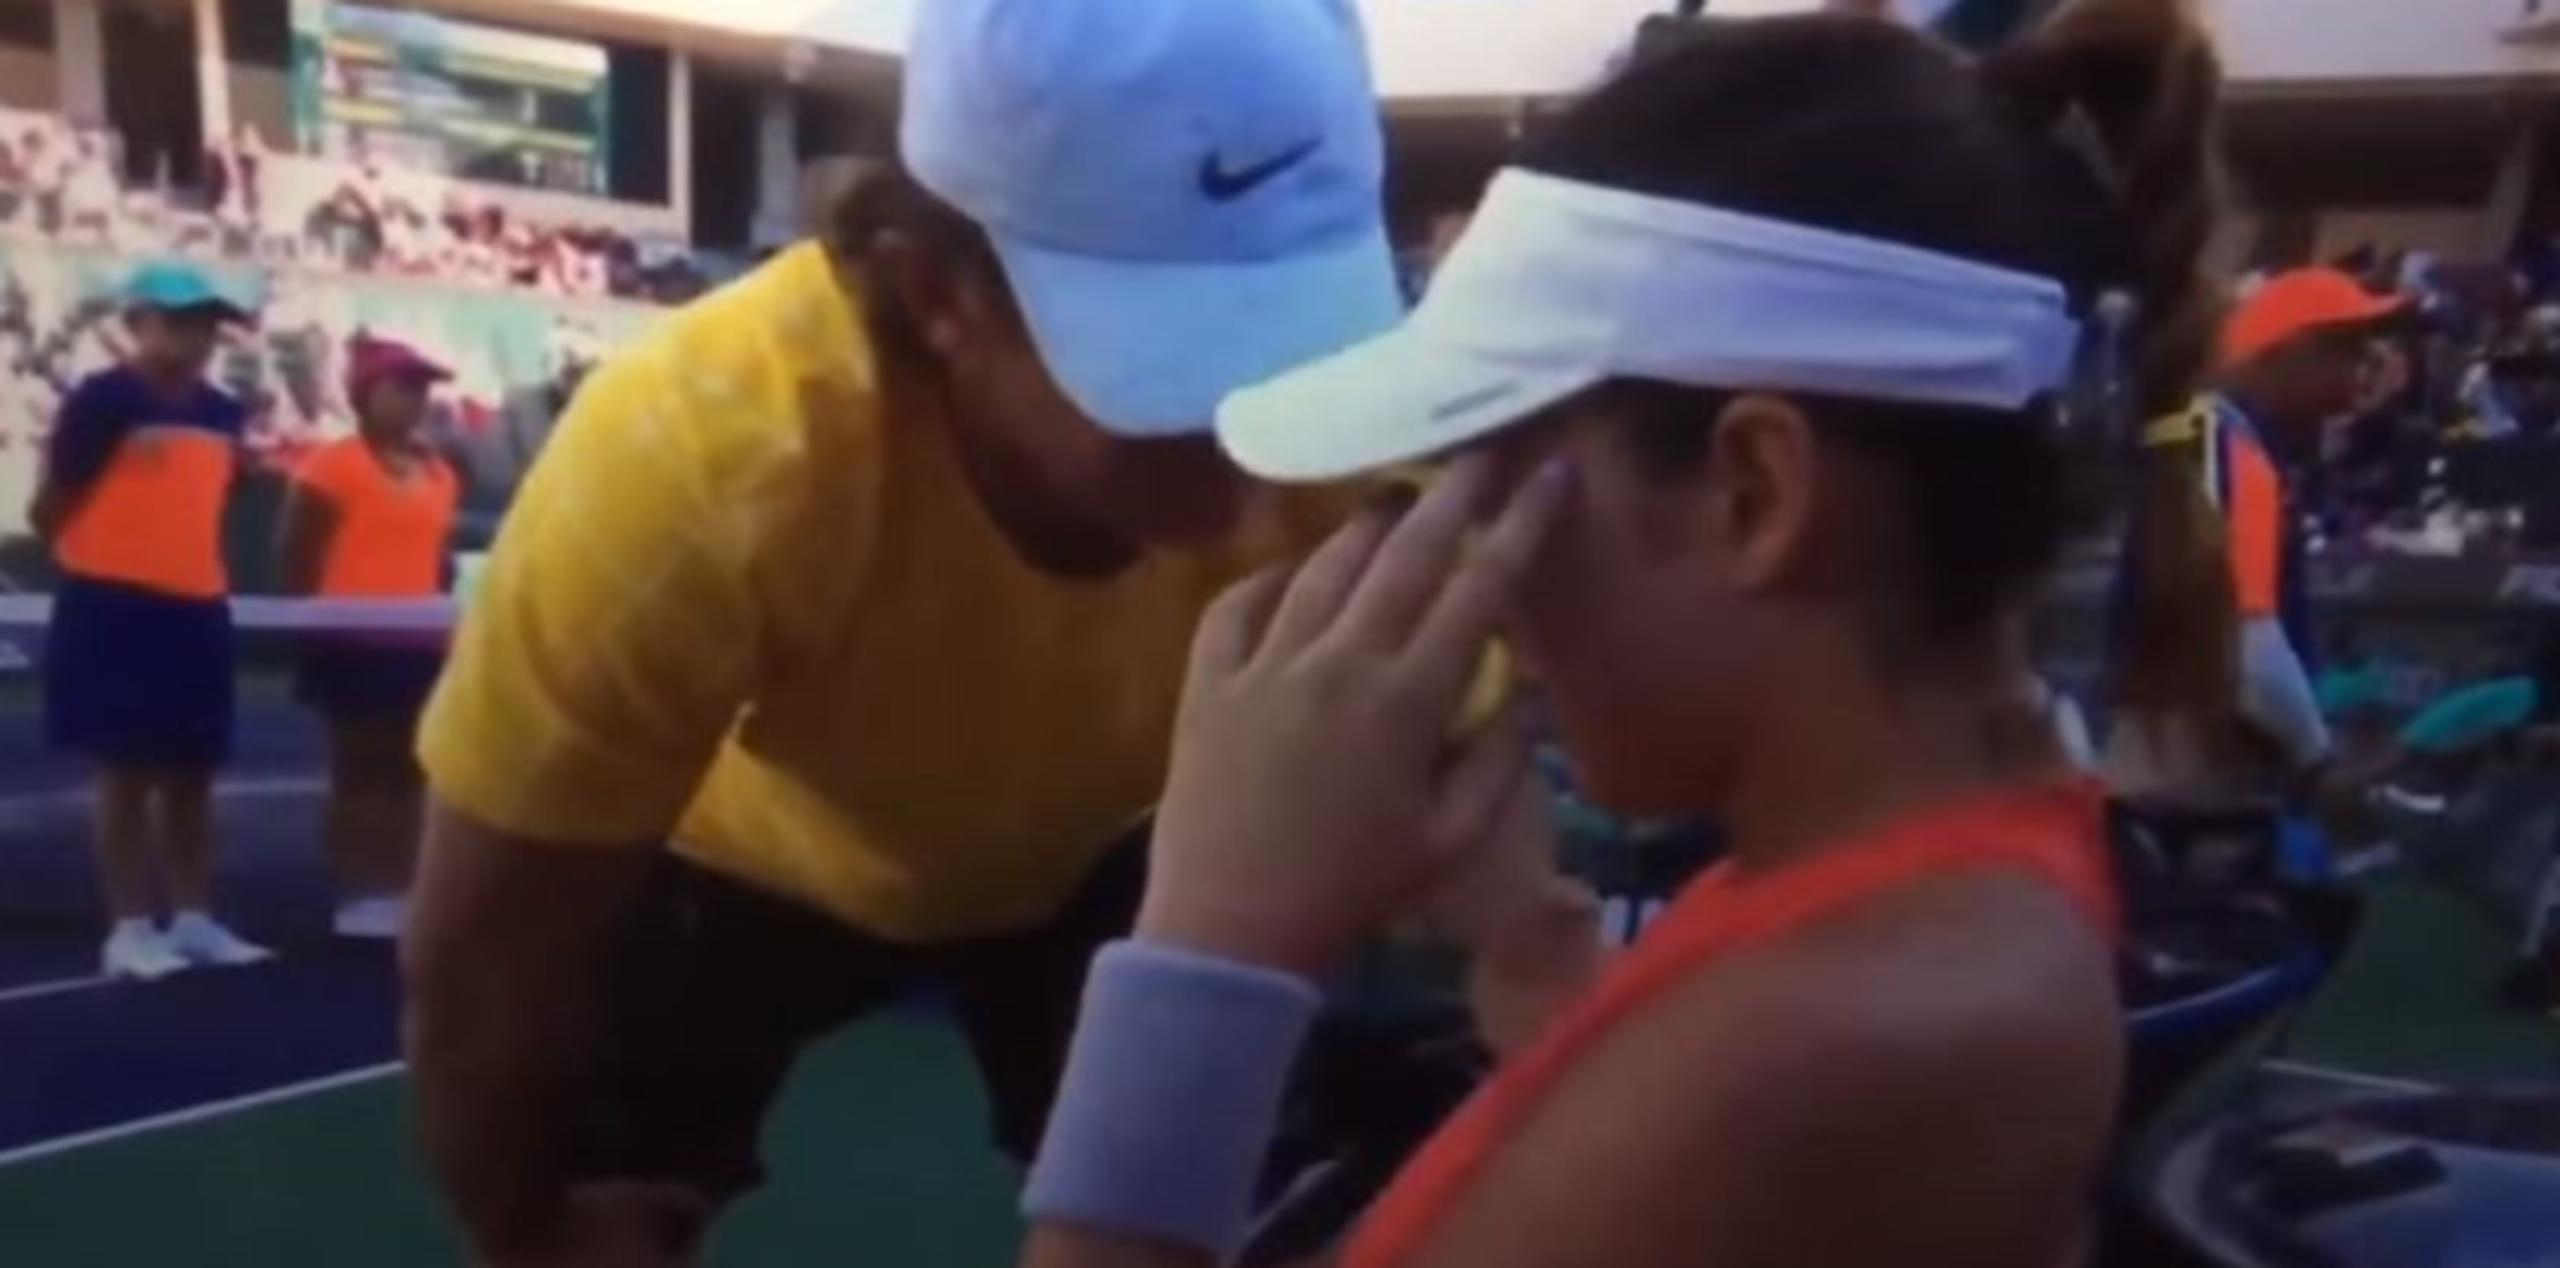 En Indian Wells, en pleno partido contra McHale, las cámaras la captaron en lágrimas durante un receso. (YouTube)